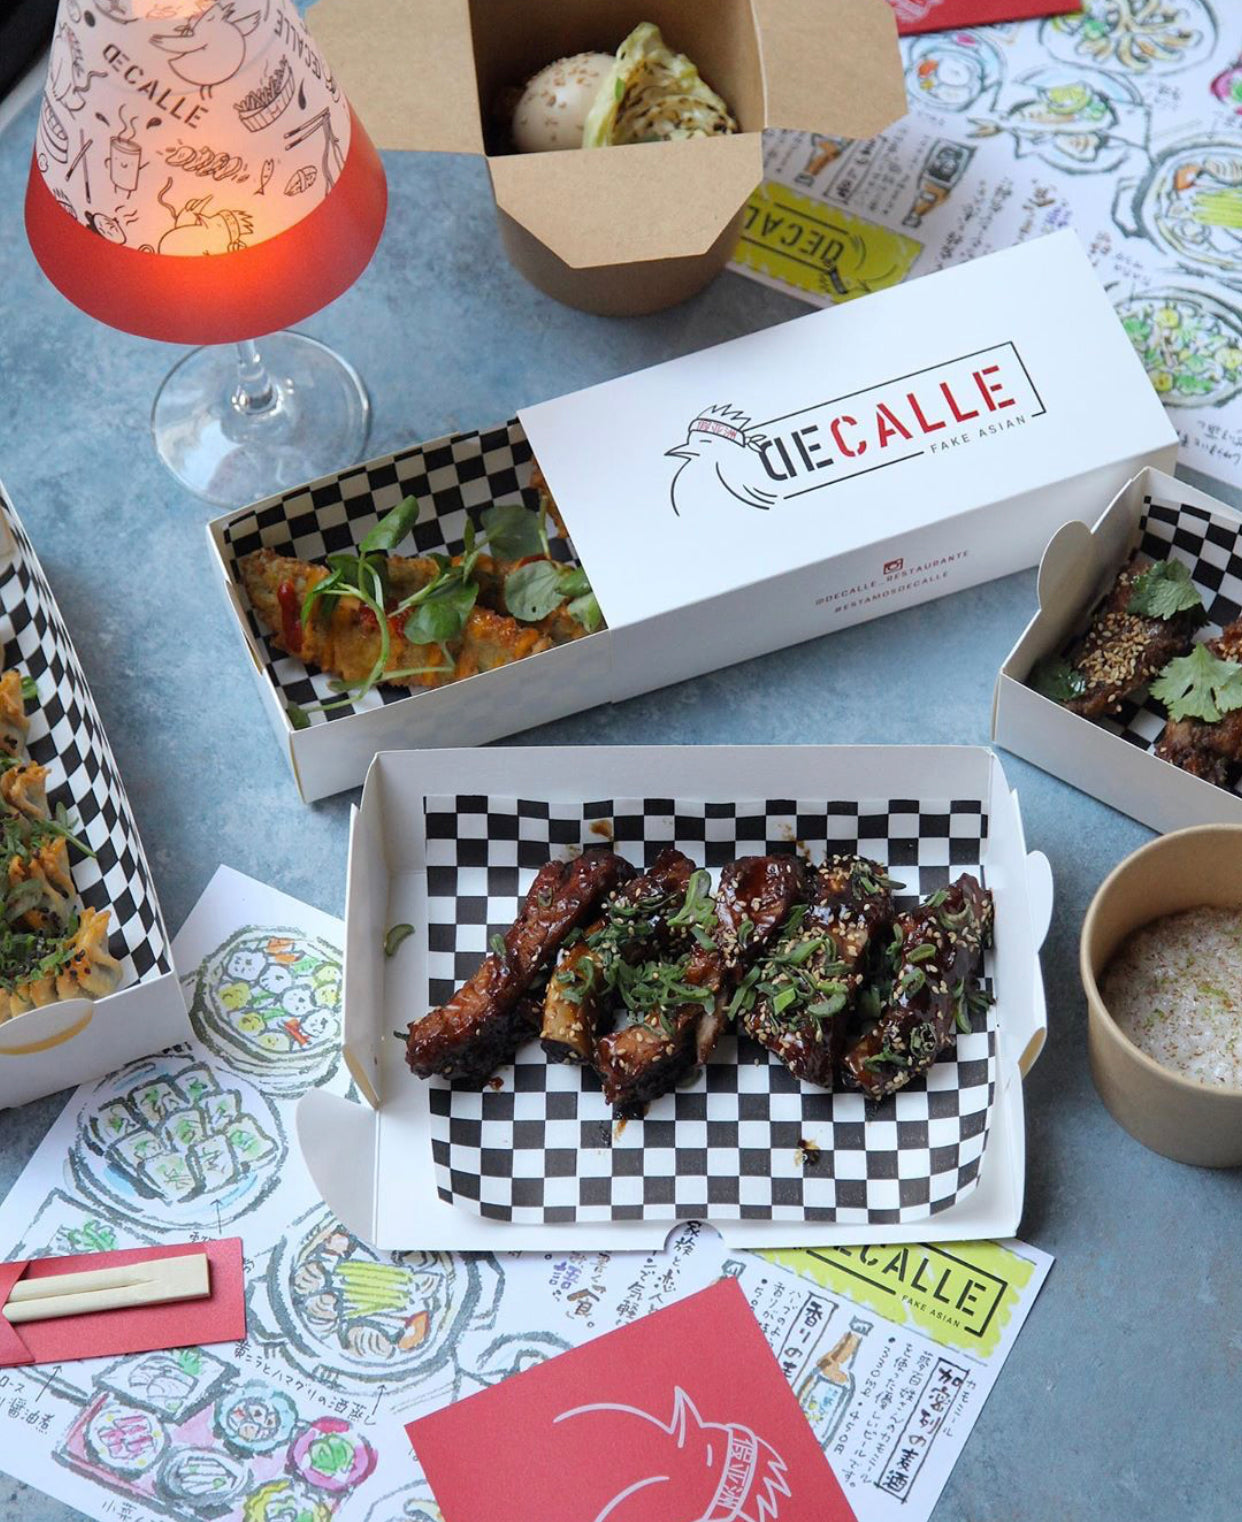 DeCalle restaurante: sabor asiático y callejero